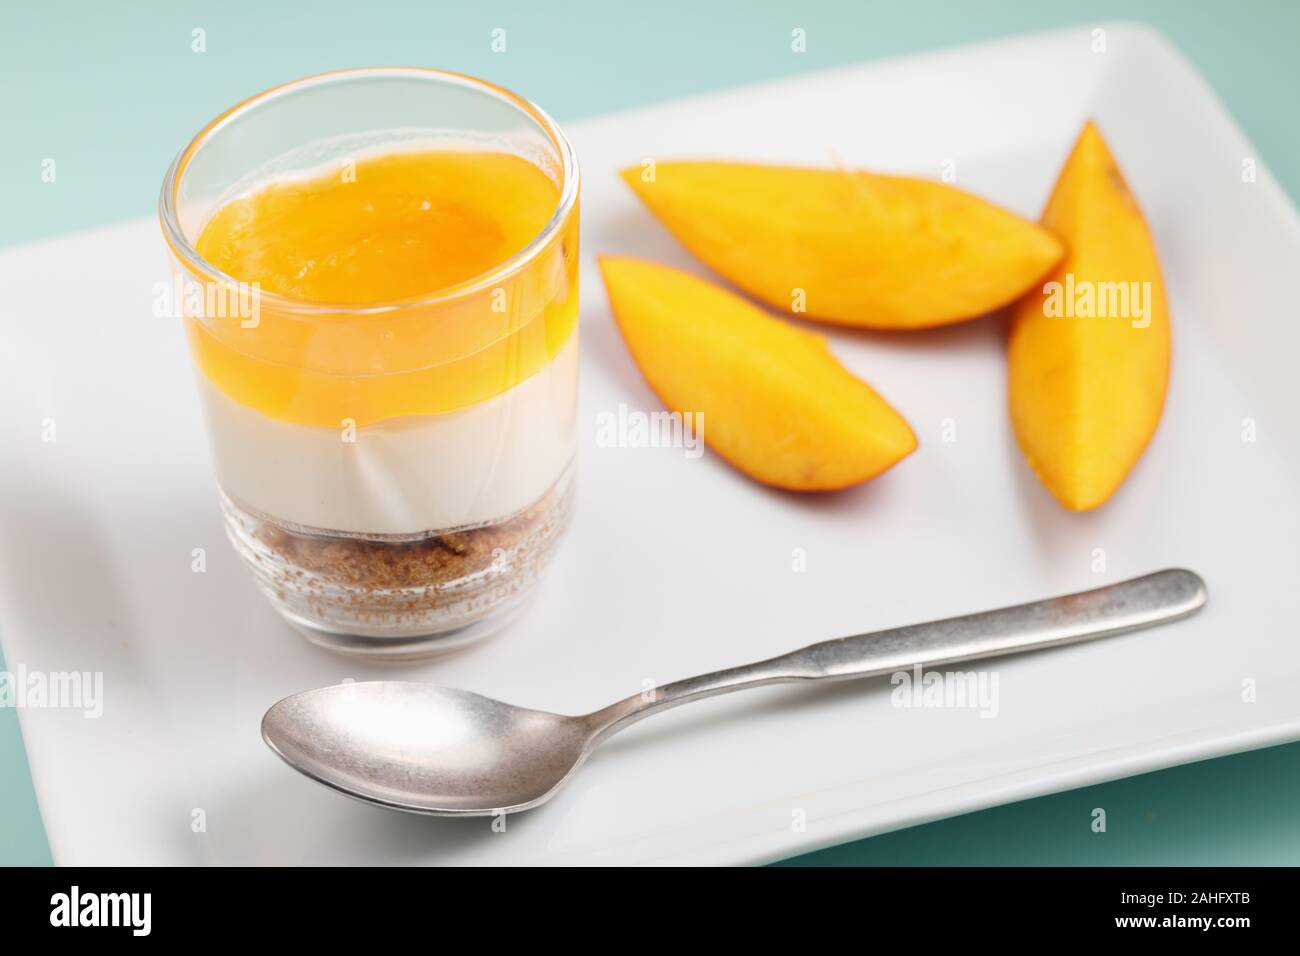 Mangue et crème dessert bagatelle libre avec des tranches de mangues Banque D'Images